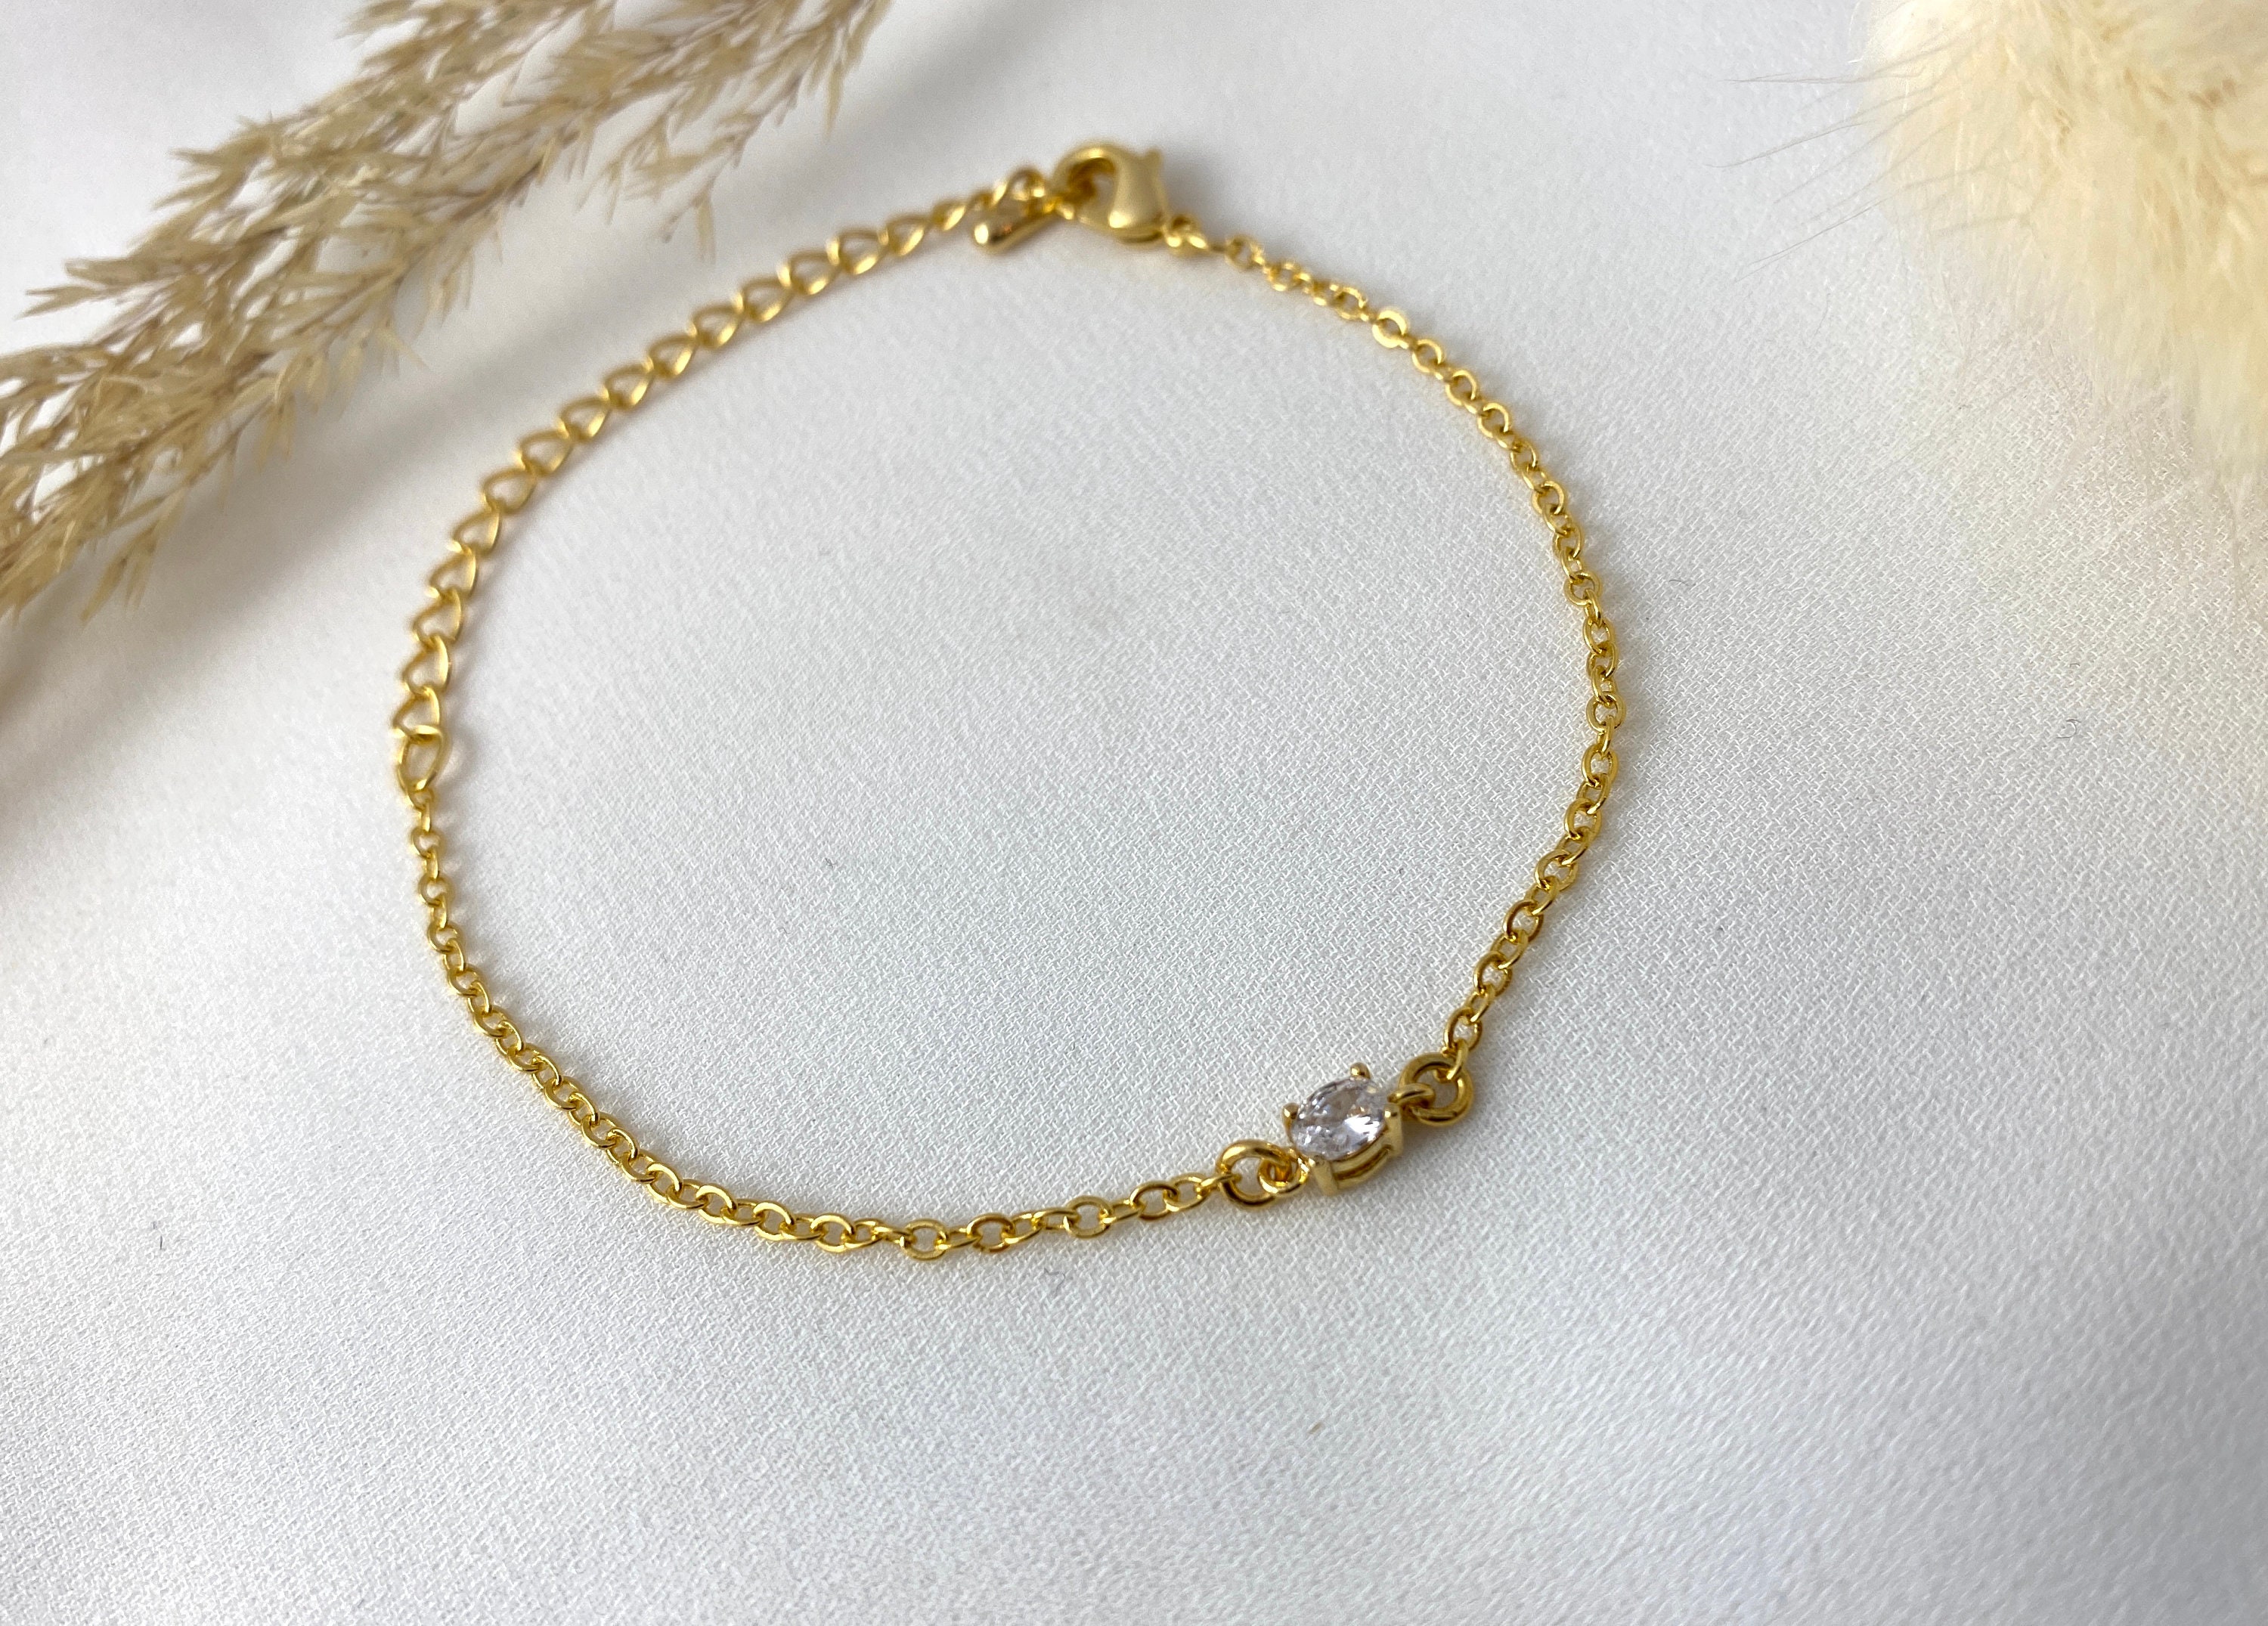 Diamond Bracelet / 14k Gold Gold Bead Diamond by the Yard Bracelet 0.50 Ctw  / 14k Gold Bezel Setting Solitaire Diamond Statement Bracelet - Etsy